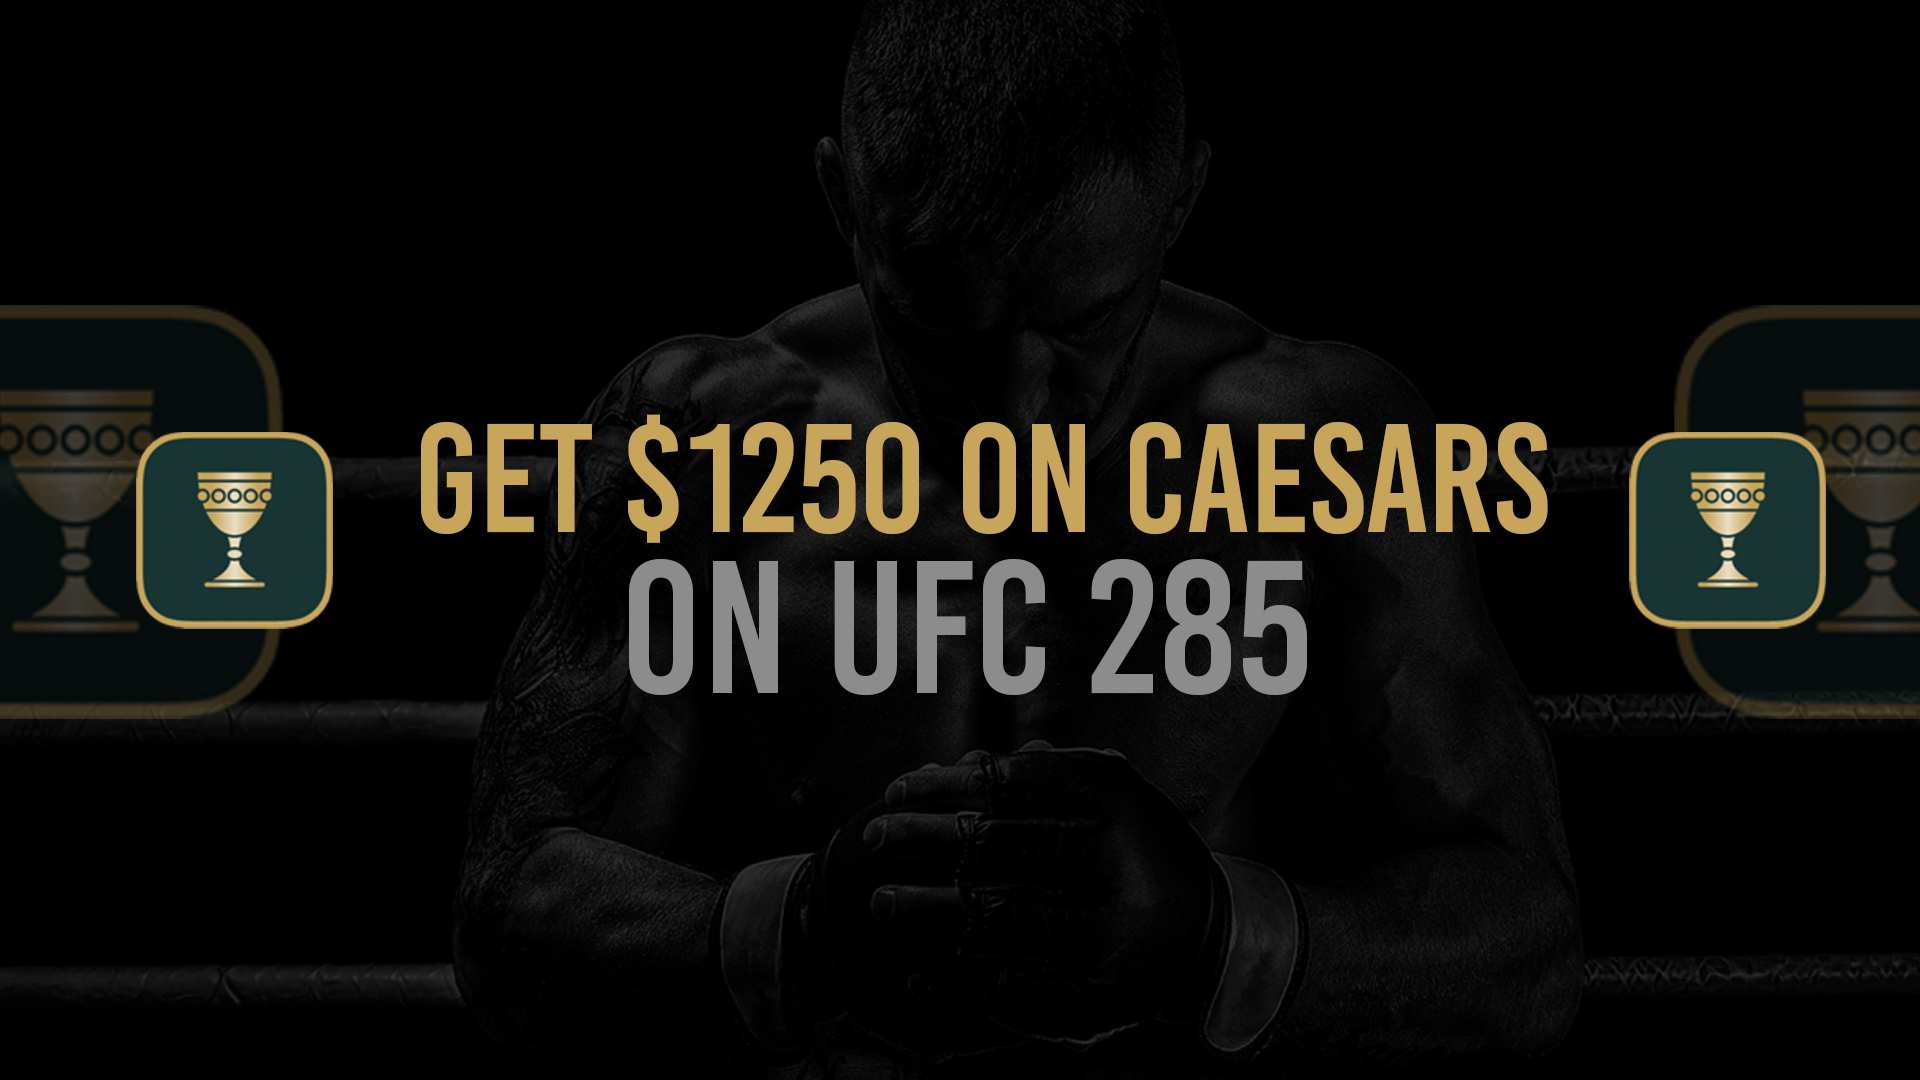 UFC 285 Caesars $1250